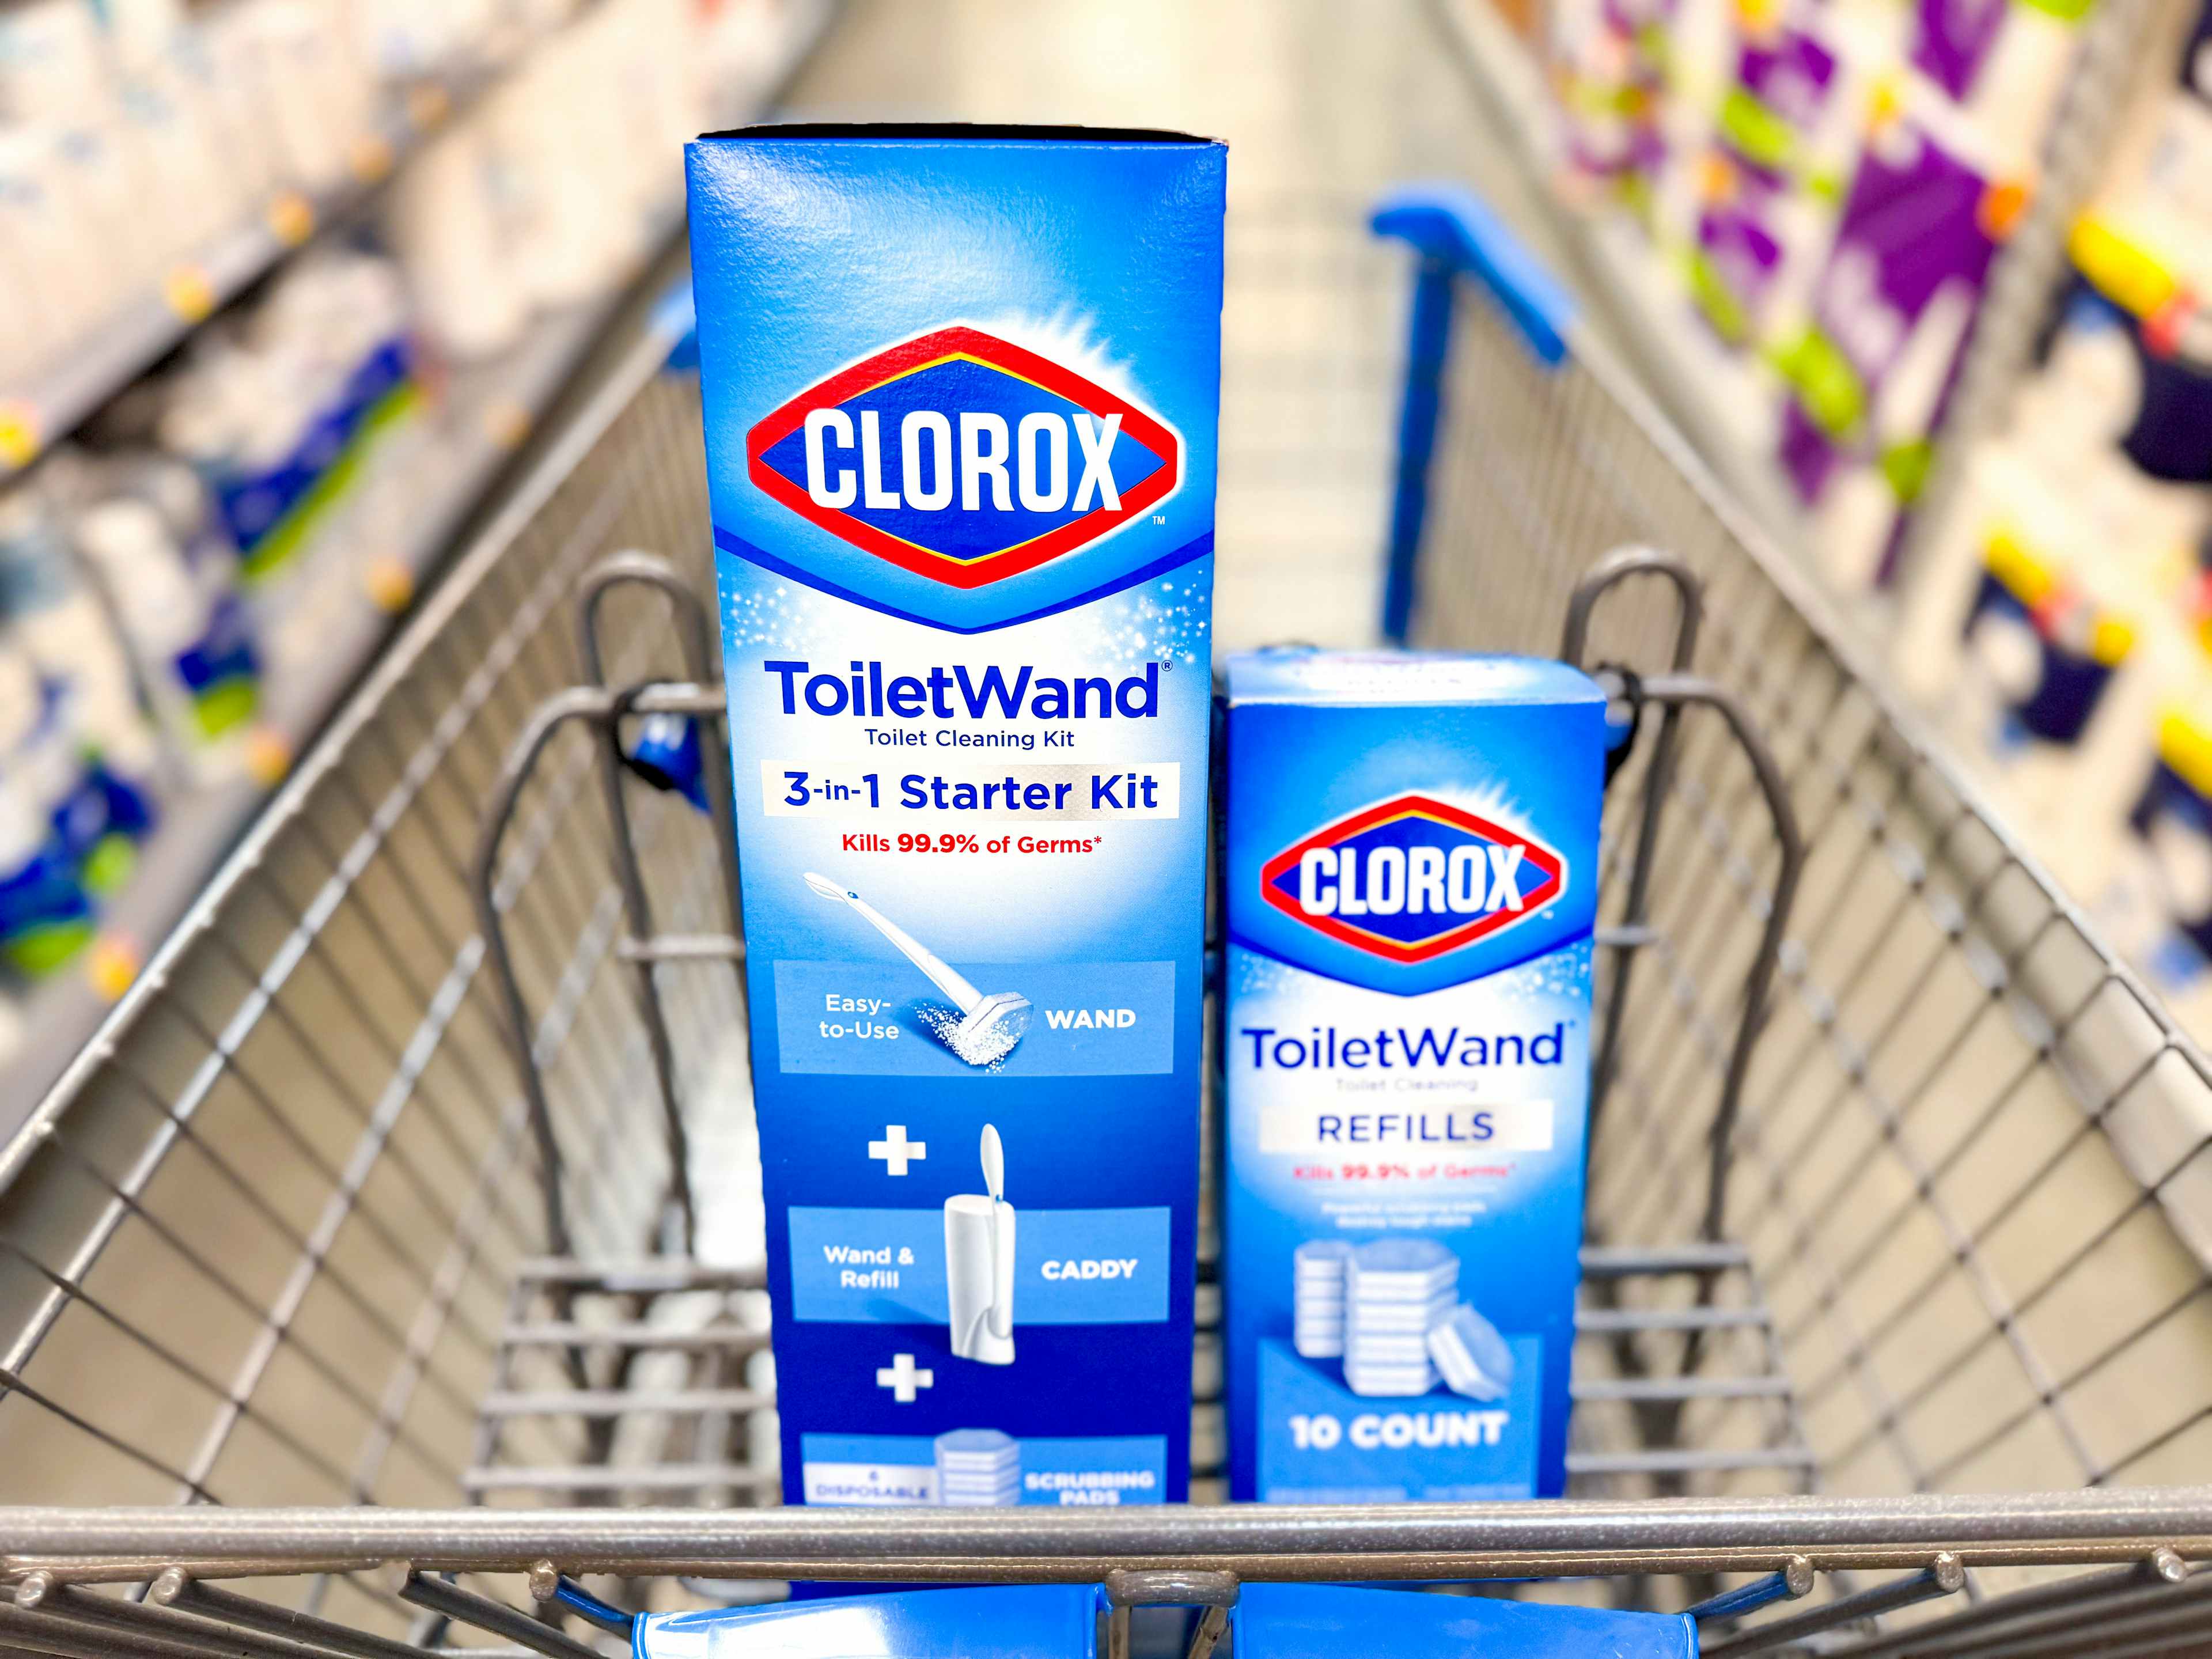 clorox toiletwand kit and refills in walmart cart